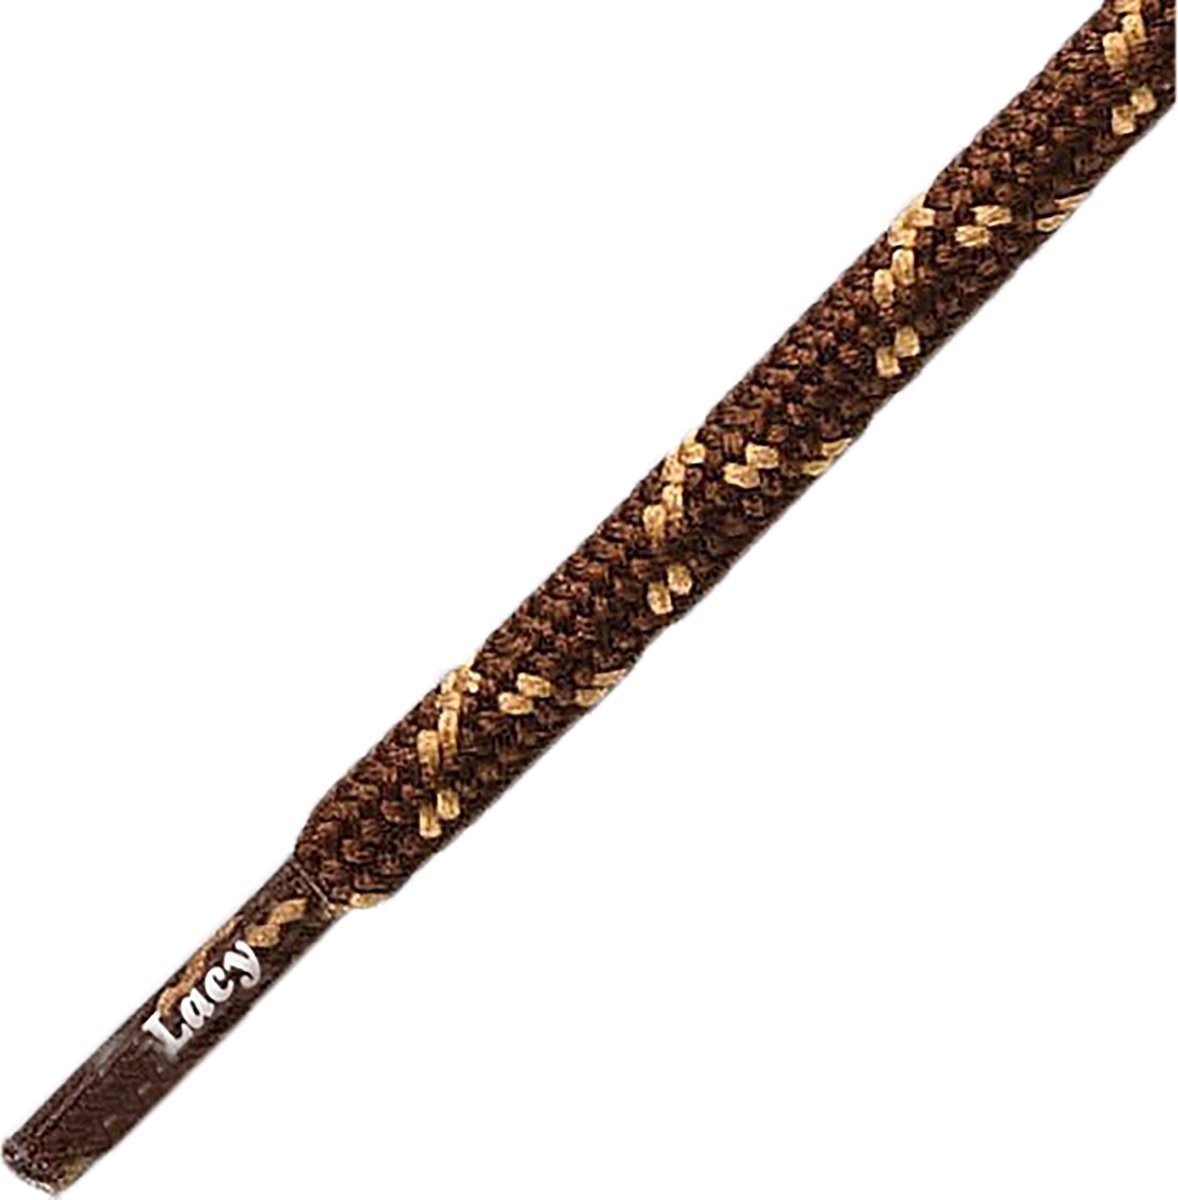 schoenveters Hikies - dark brown/light brown- 120 cm lang en 4.5mm dik